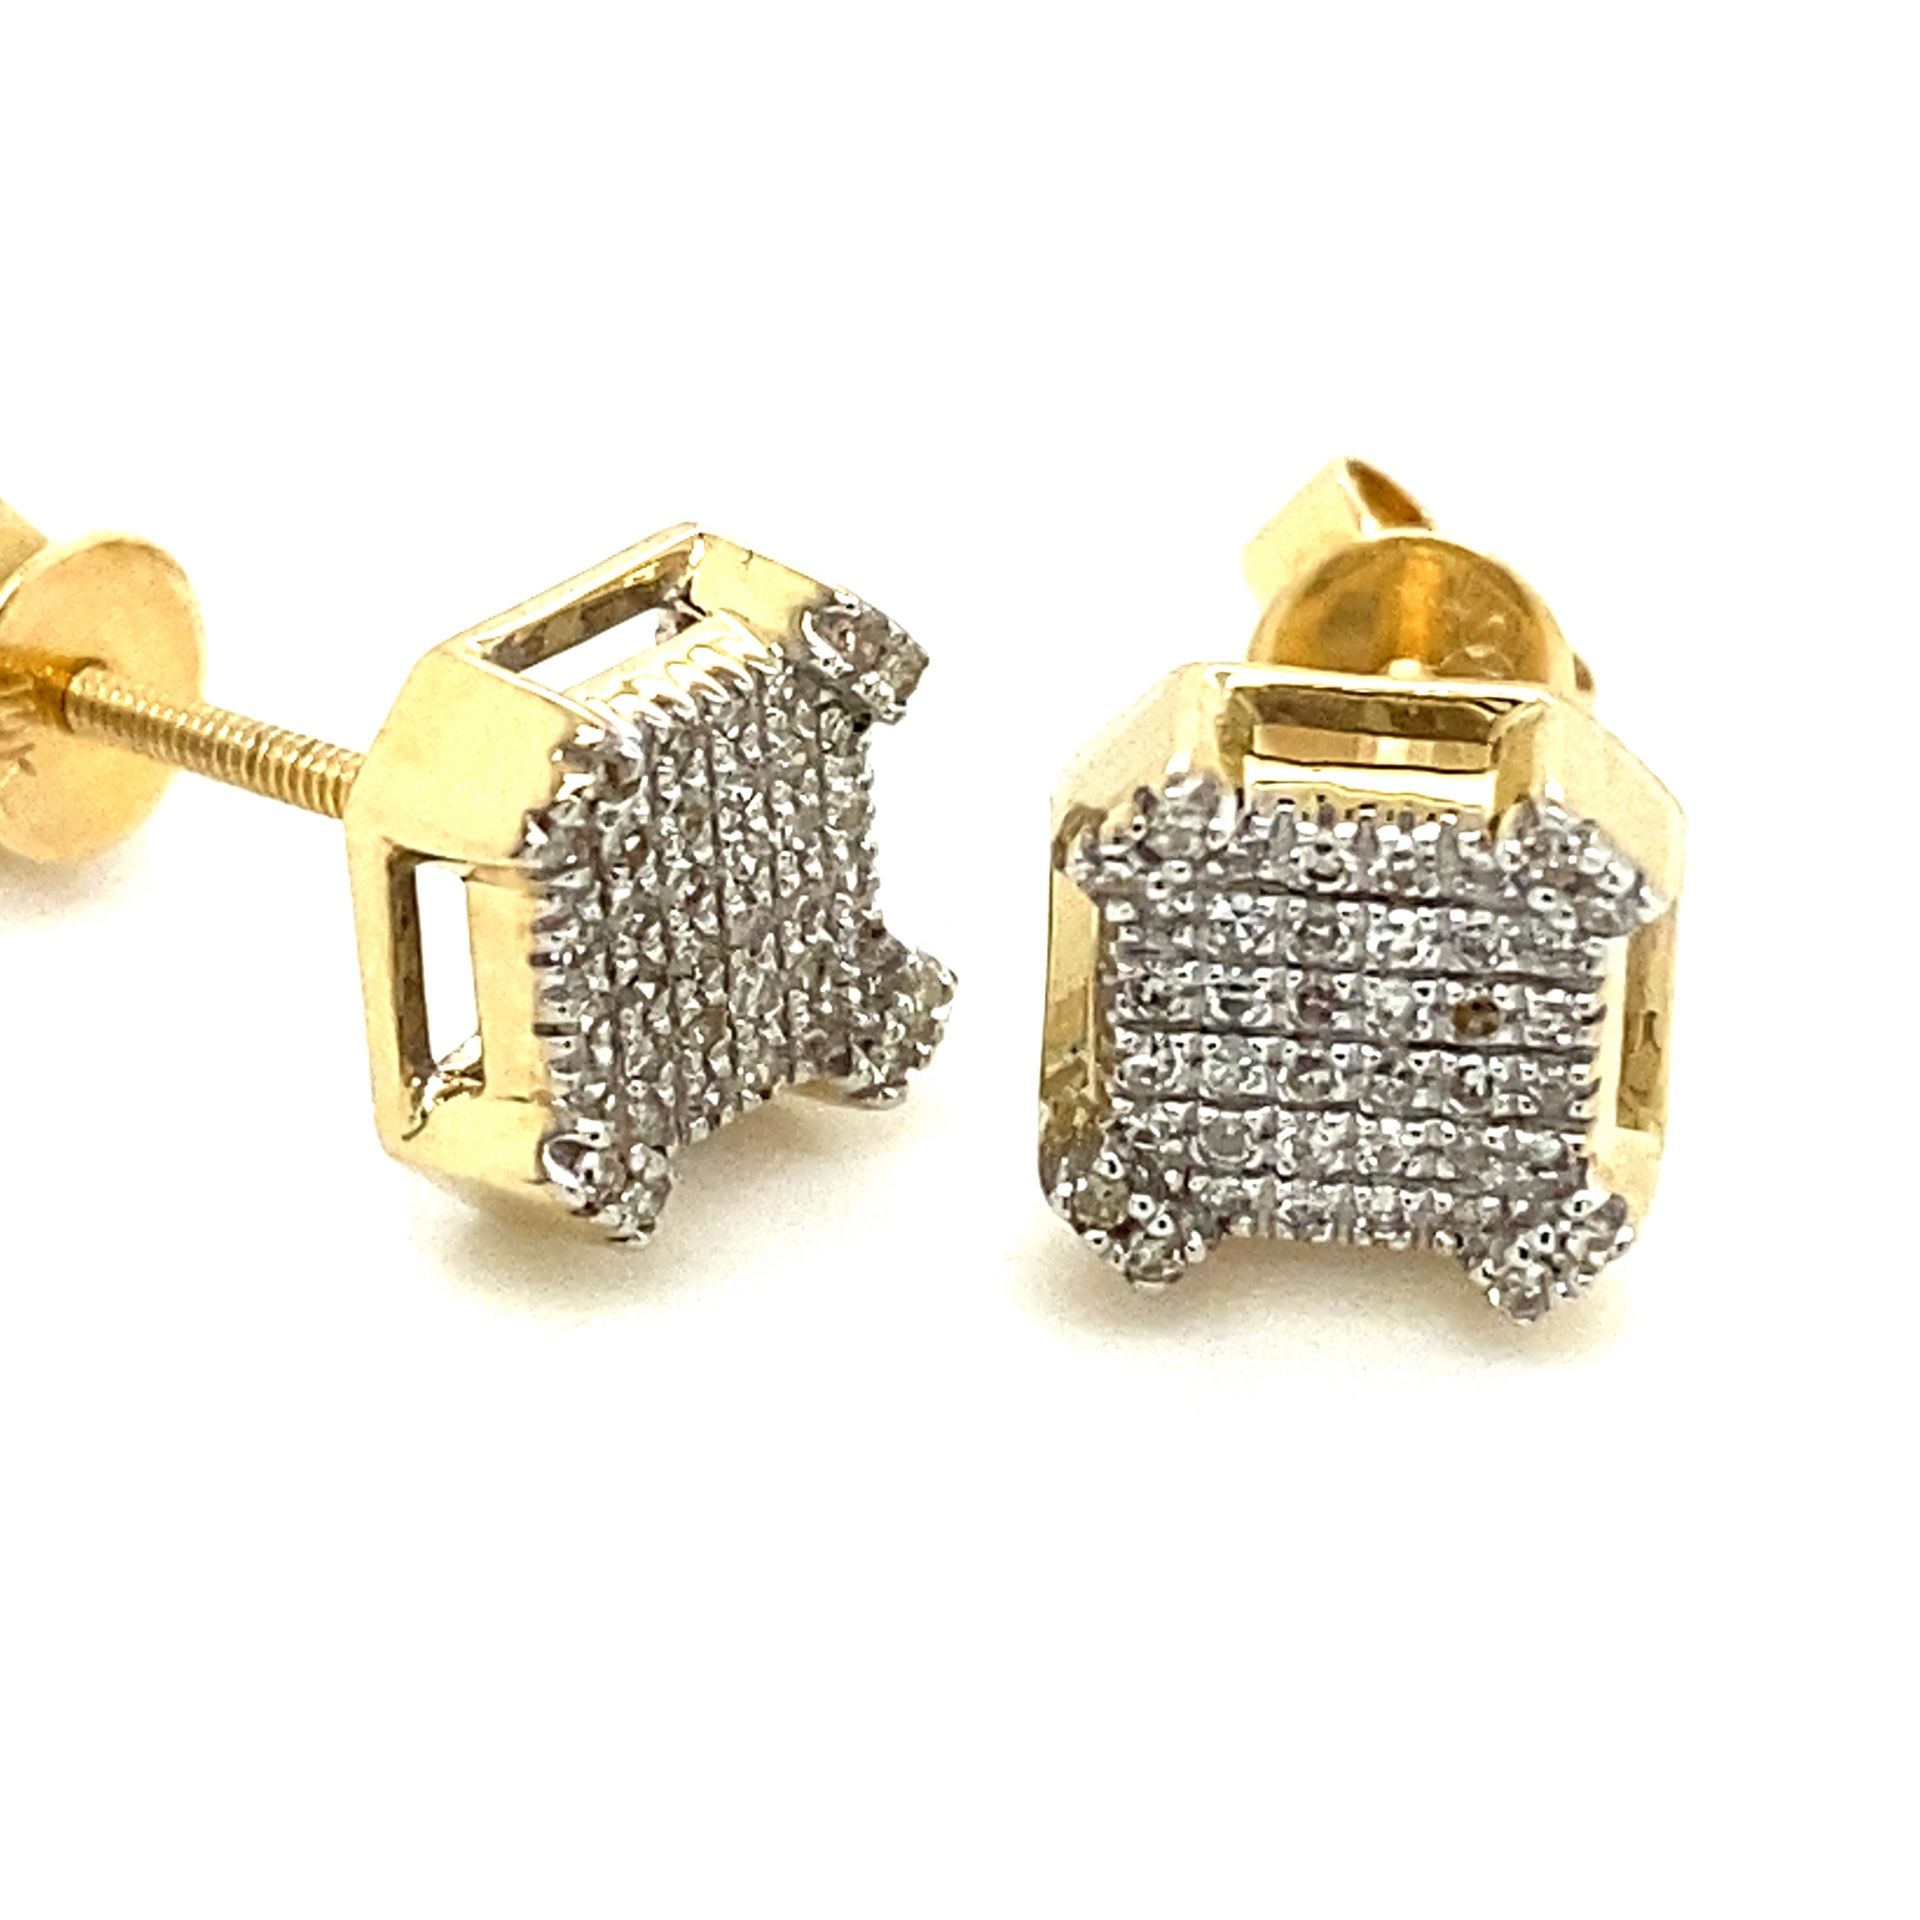 10k Gold Diamond Cluster Earrings .13ctw 133622 16